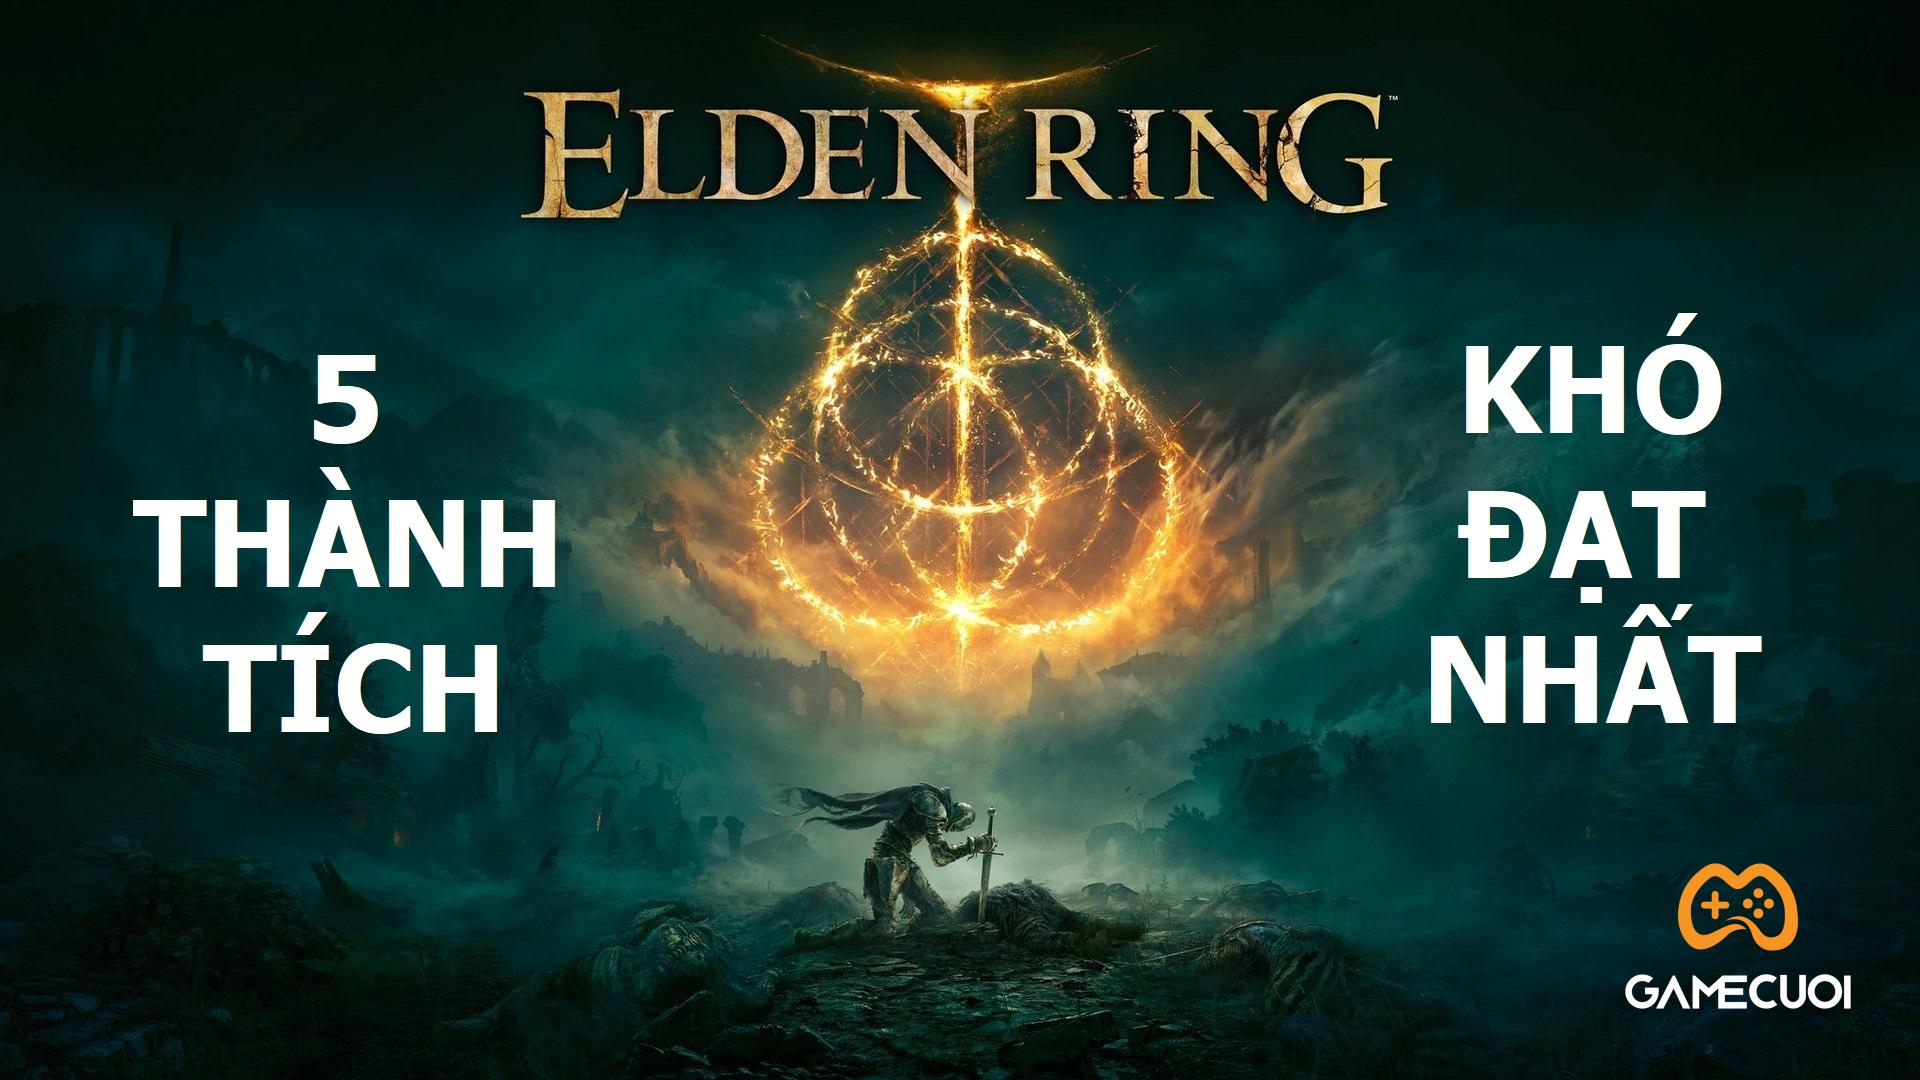 Elden Ring: Top 5 thành tích khó mở khóa nhất